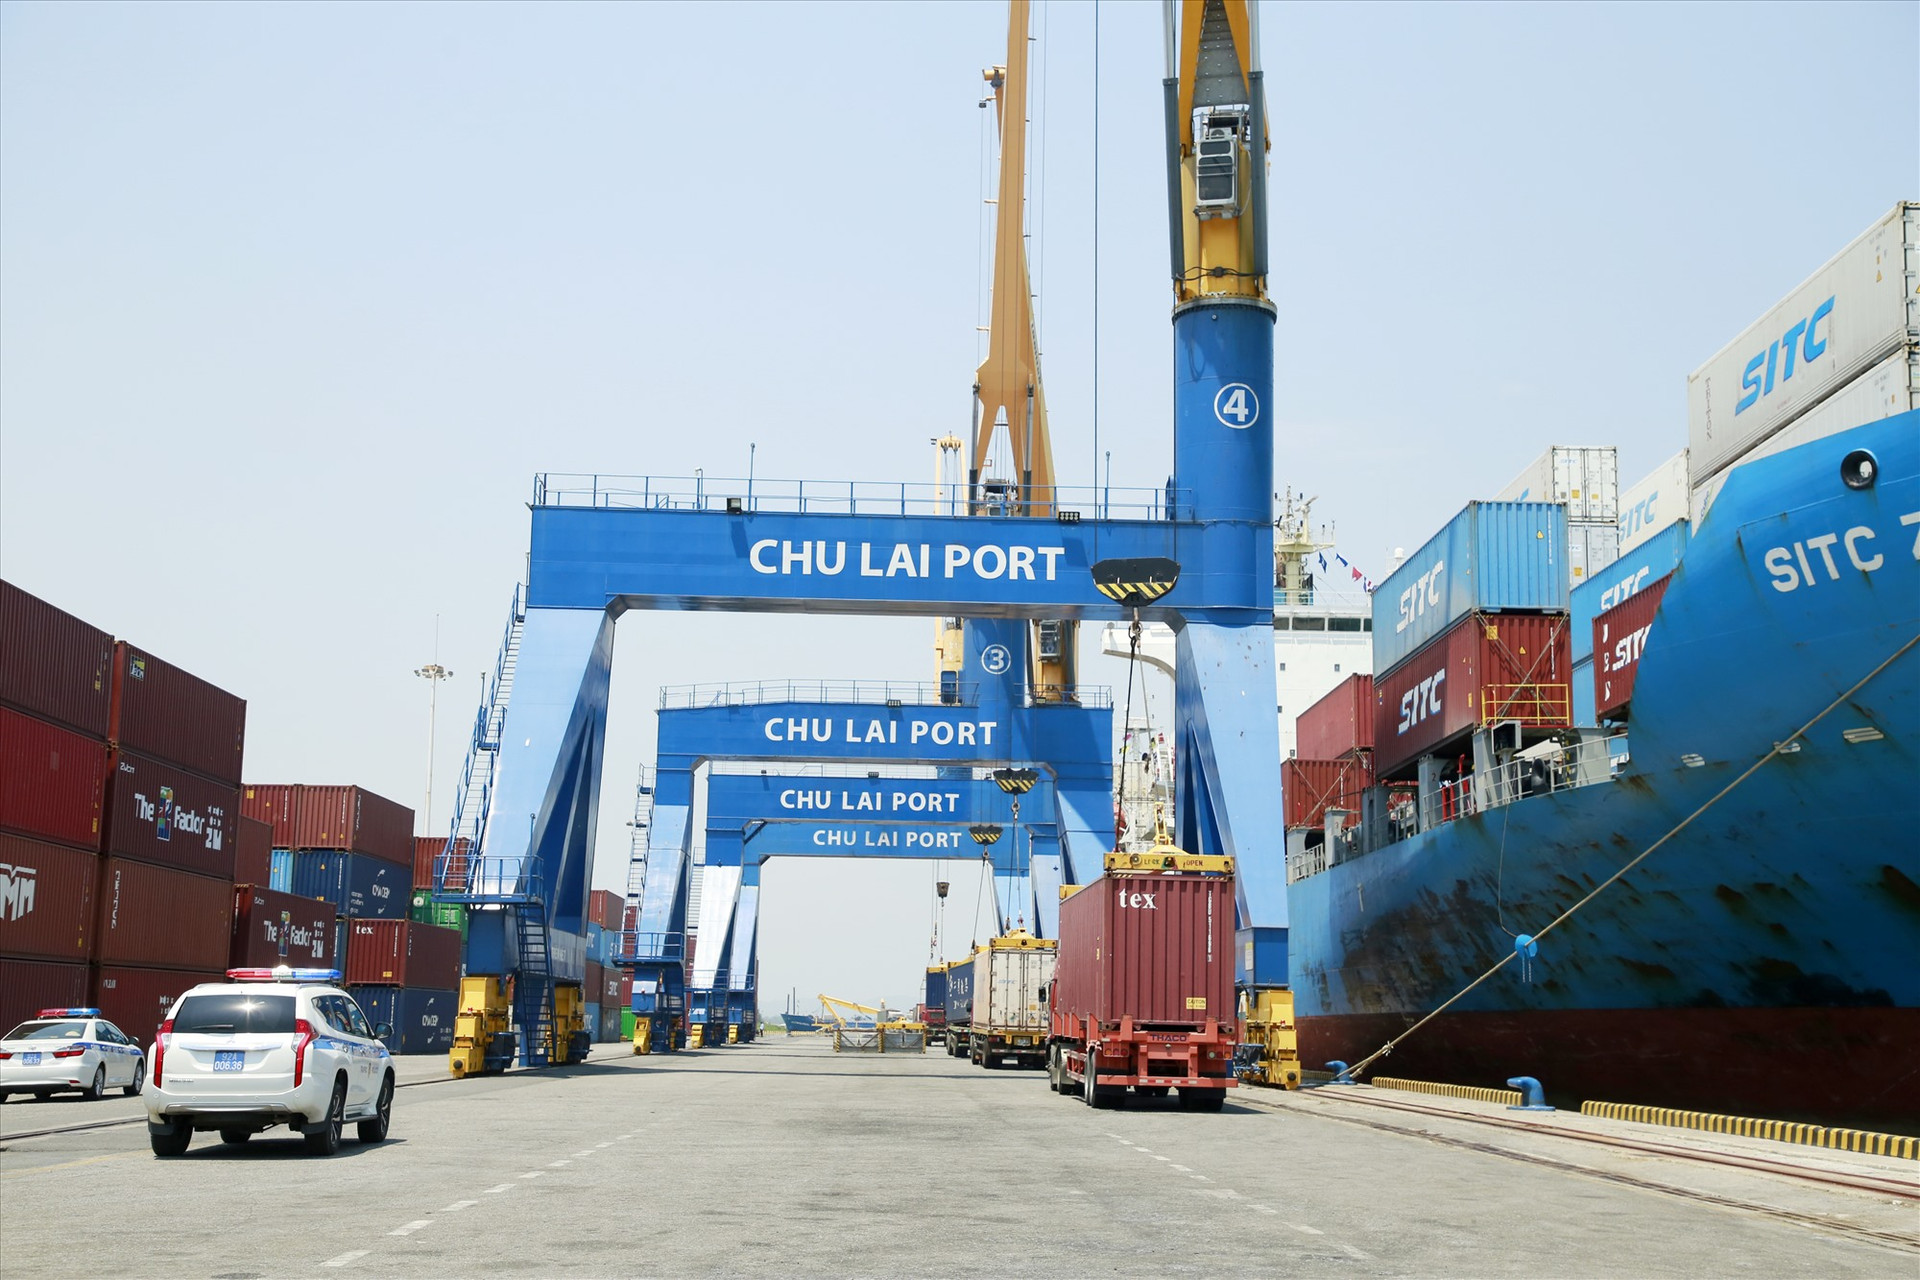 Quảng Nam đề nghị Thủ tướng Chính phủ thống nhất bổ sung quy hoạch trung tâm logistics container tại cảng Chu Lai. Ảnh: T.C